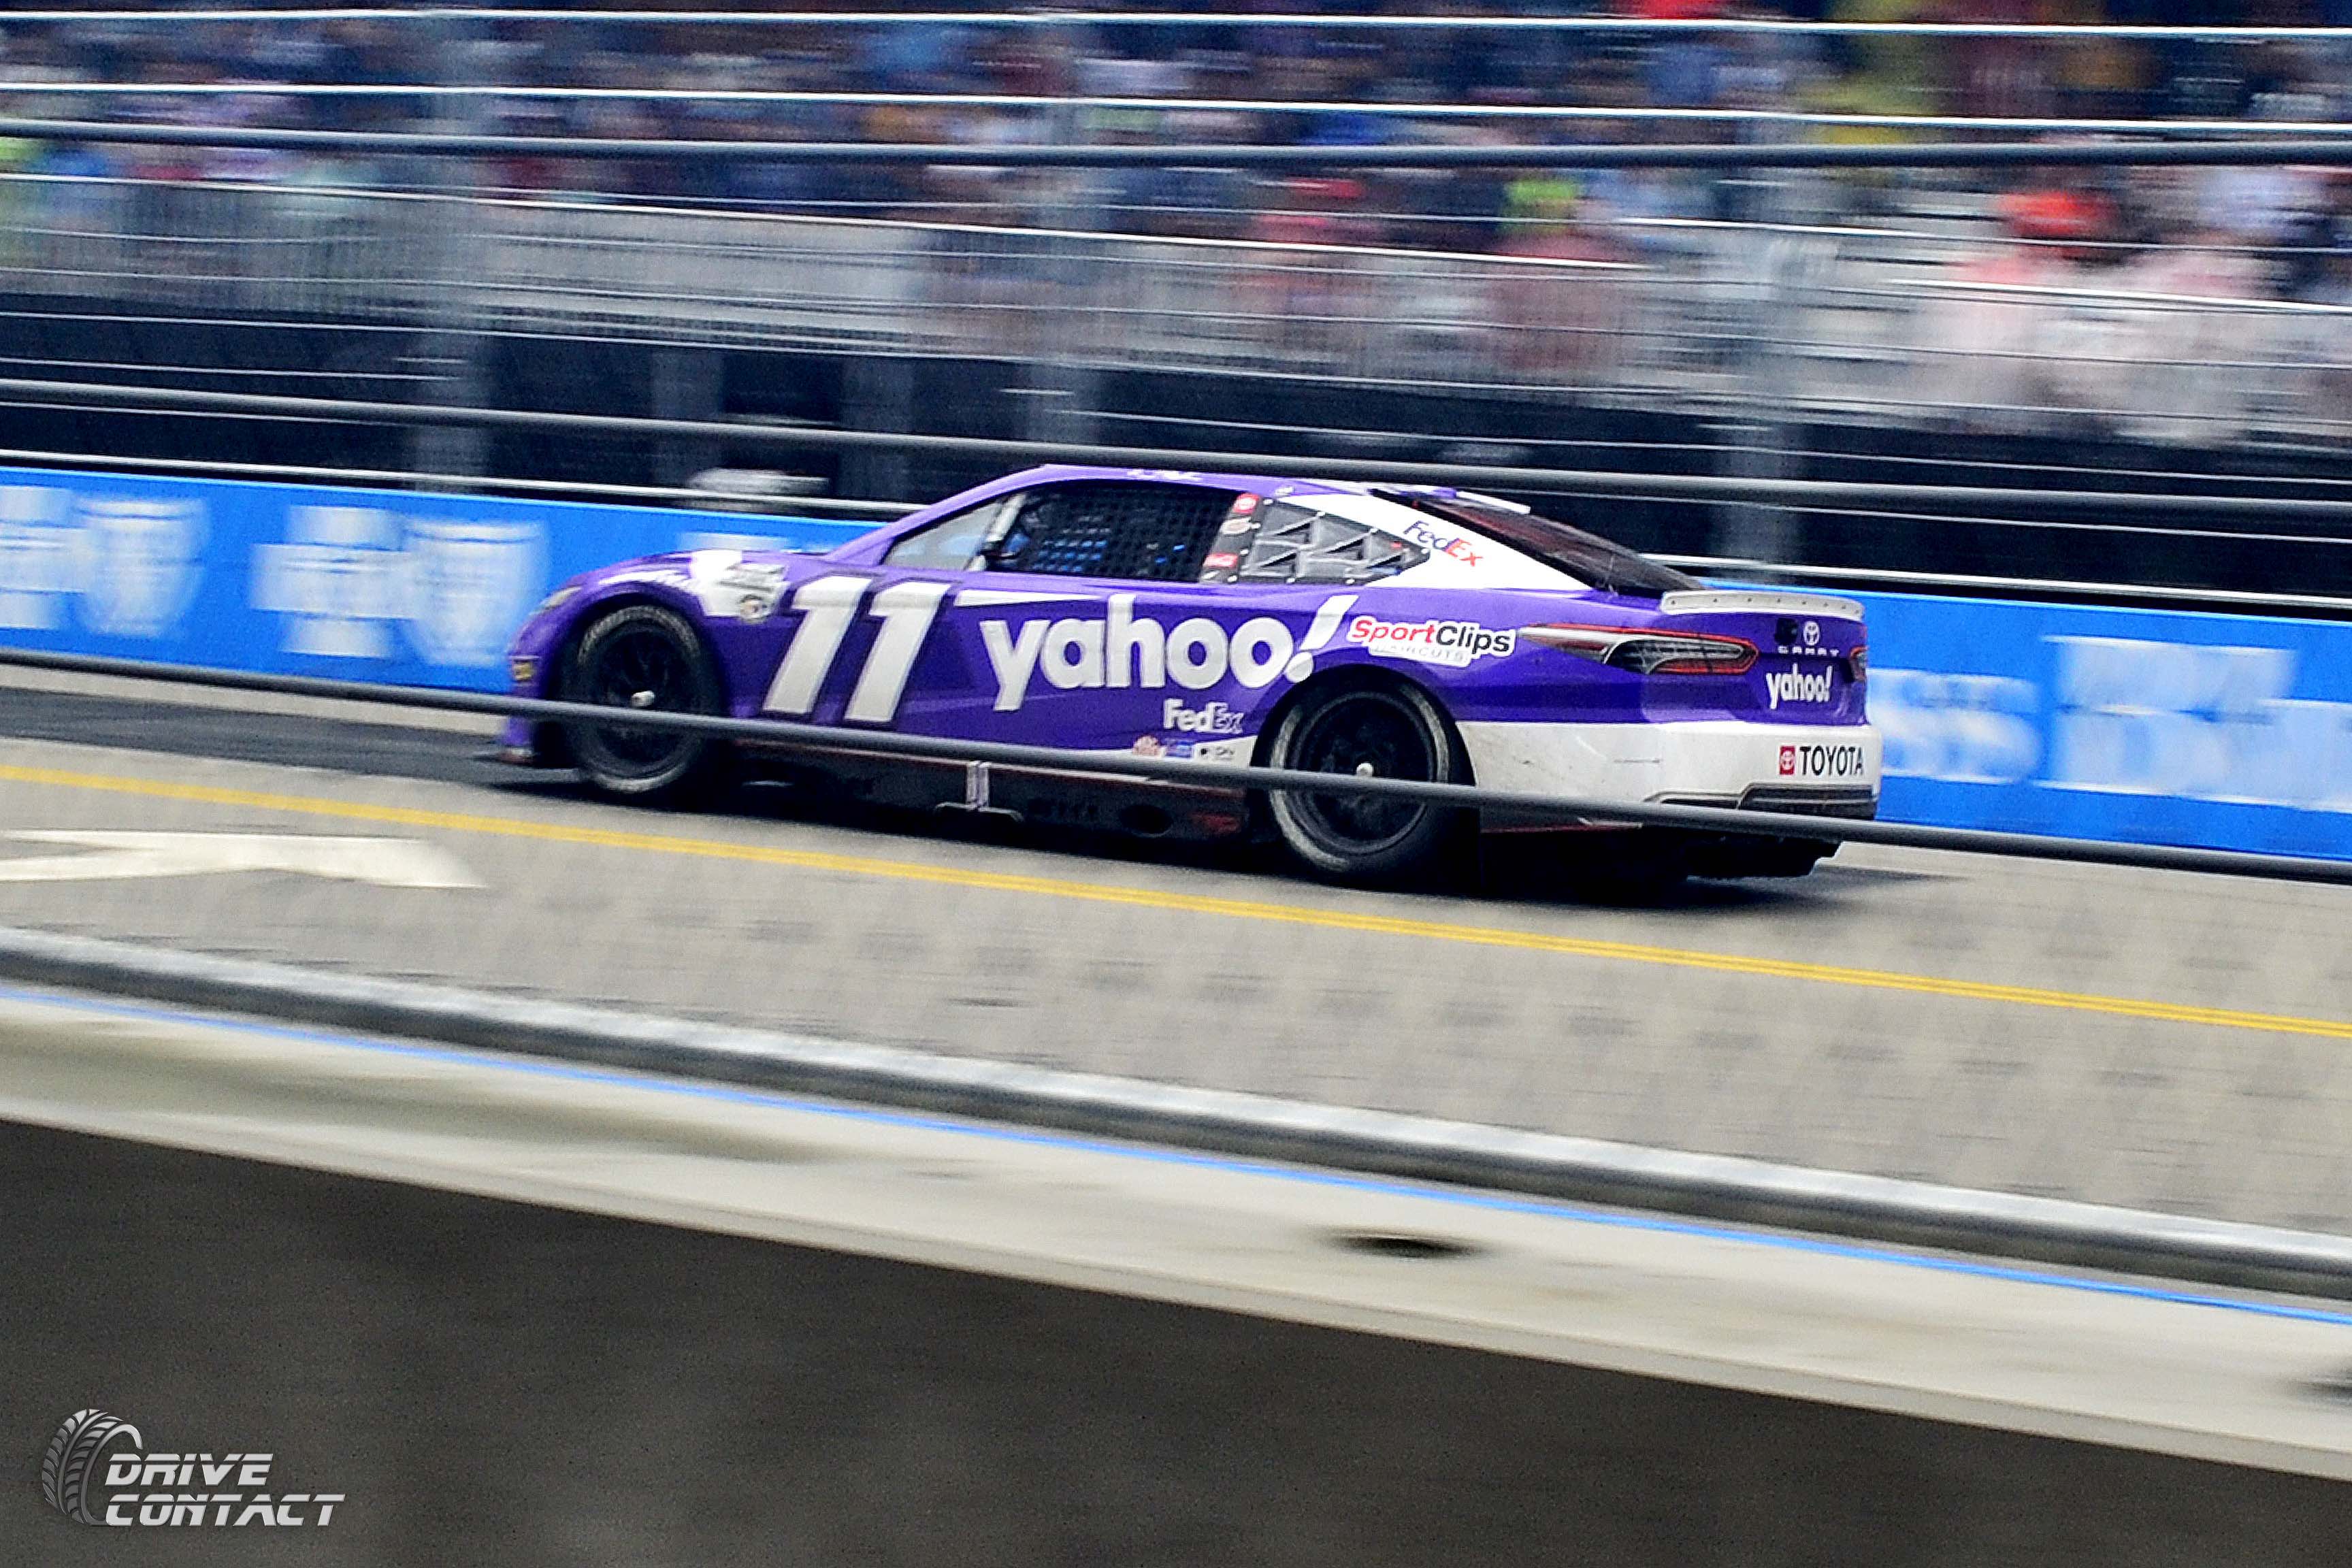 Denny Hamlin will drive the No. 11 Yahoo! Toyota